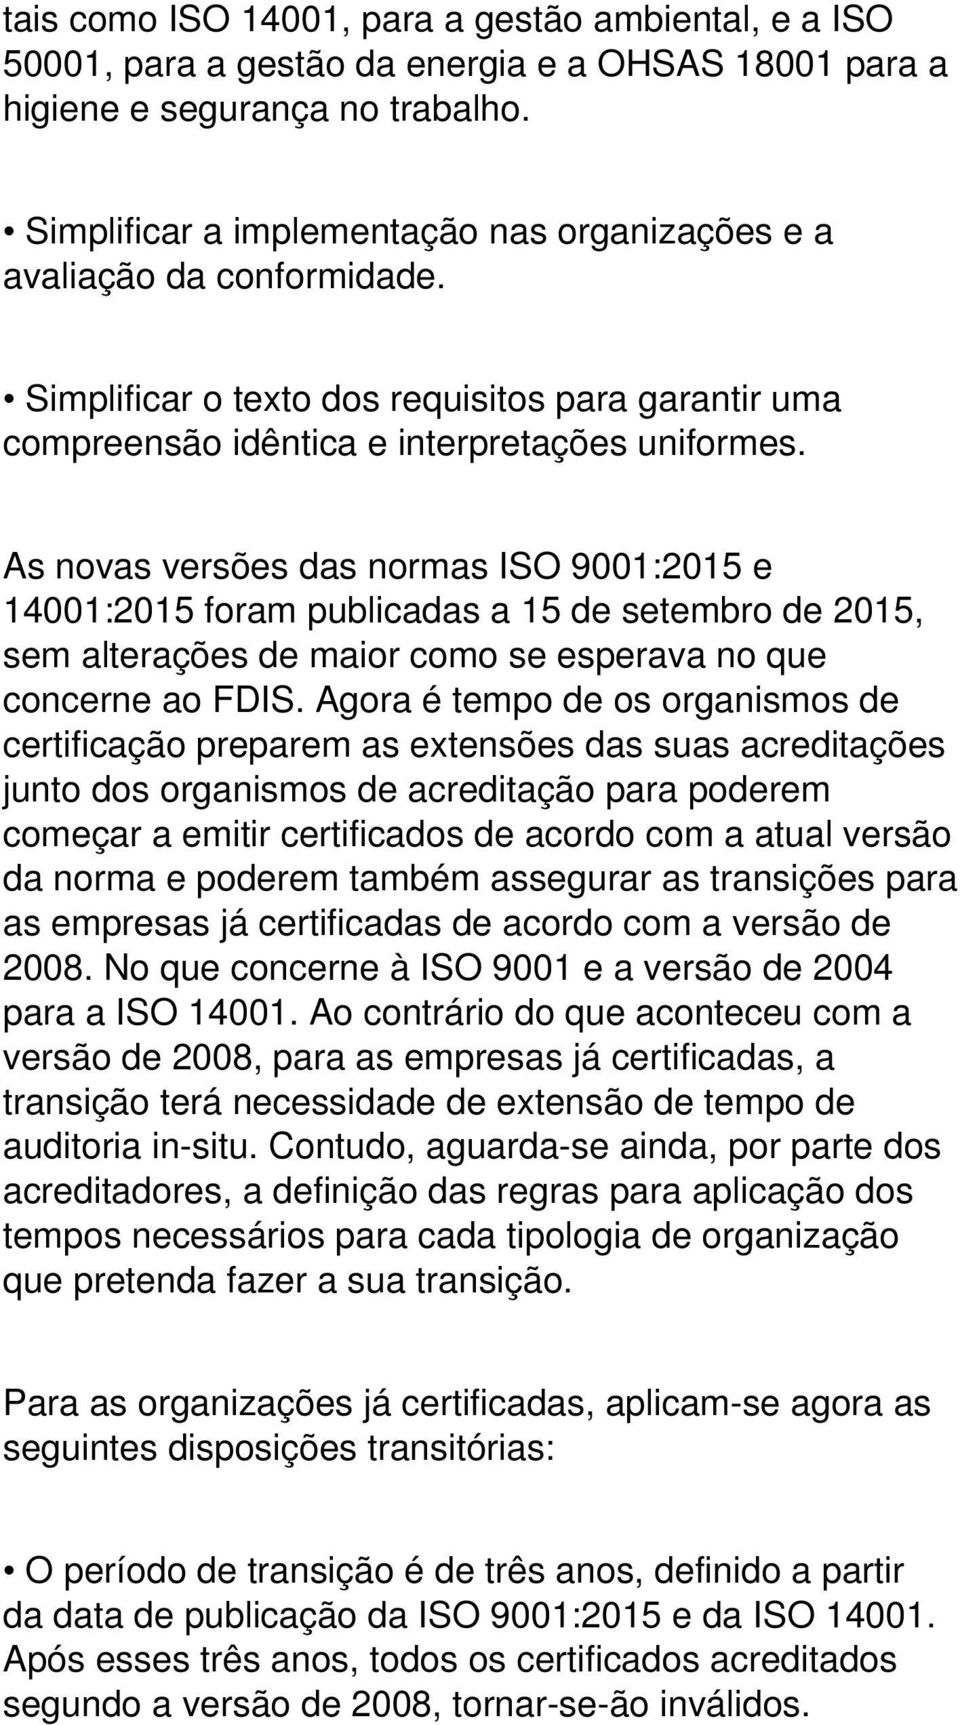 As novas versões das normas ISO 9001:2015 e 14001:2015 foram publicadas a 15 de setembro de 2015, sem alterações de maior como se esperava no que concerne ao FDIS.